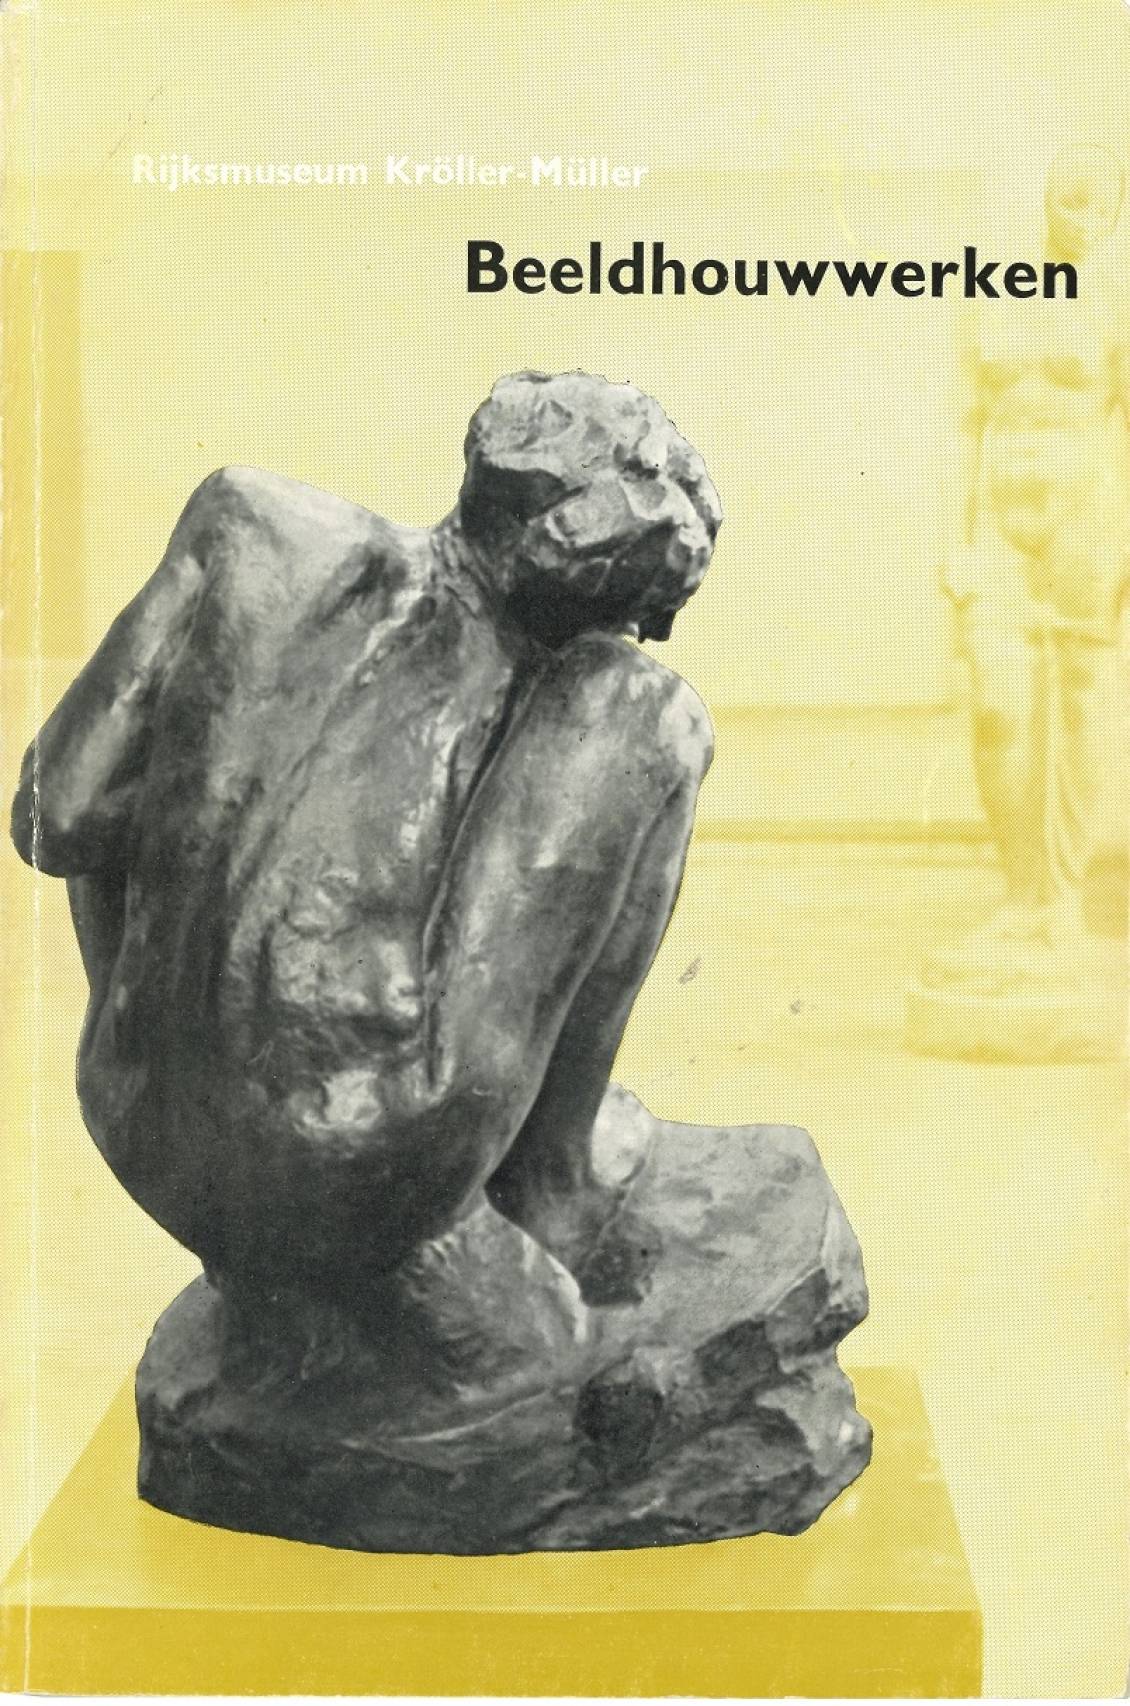 Catalogus verzameling Rijksmuseum Kröller-Müller: Beeldhouwwerken, 1952